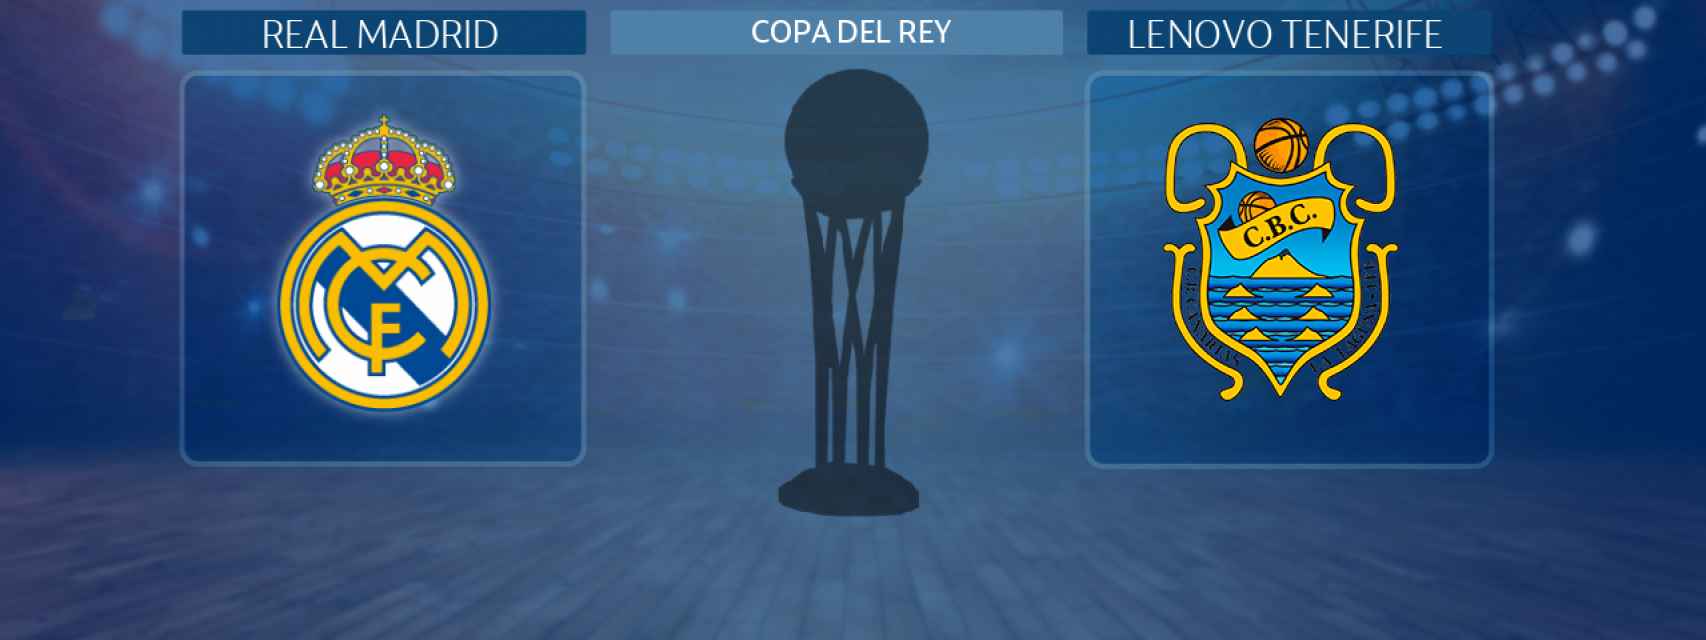 Real Madrid - Lenovo Tenerife, partido de la Copa del Rey